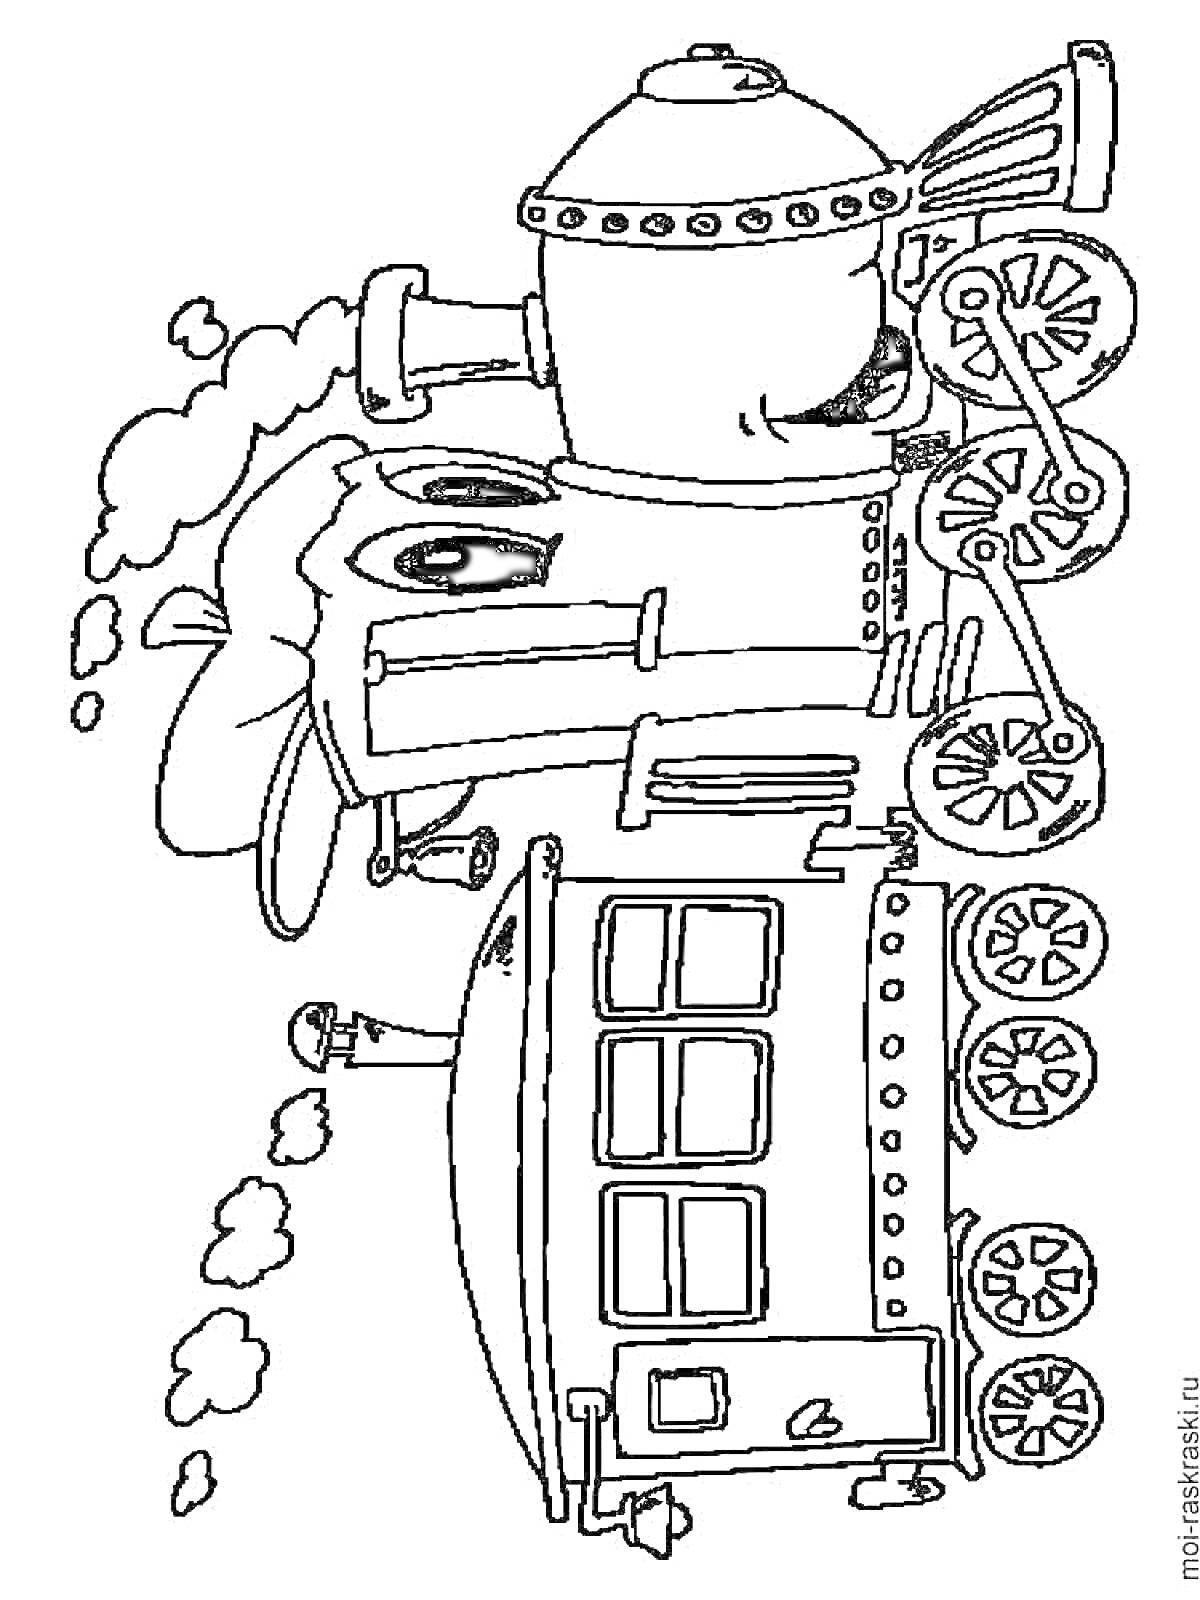 Раскраска Паровозик с глазами и дымом из трубы, прикрепленным вагончиком и деталями механизма